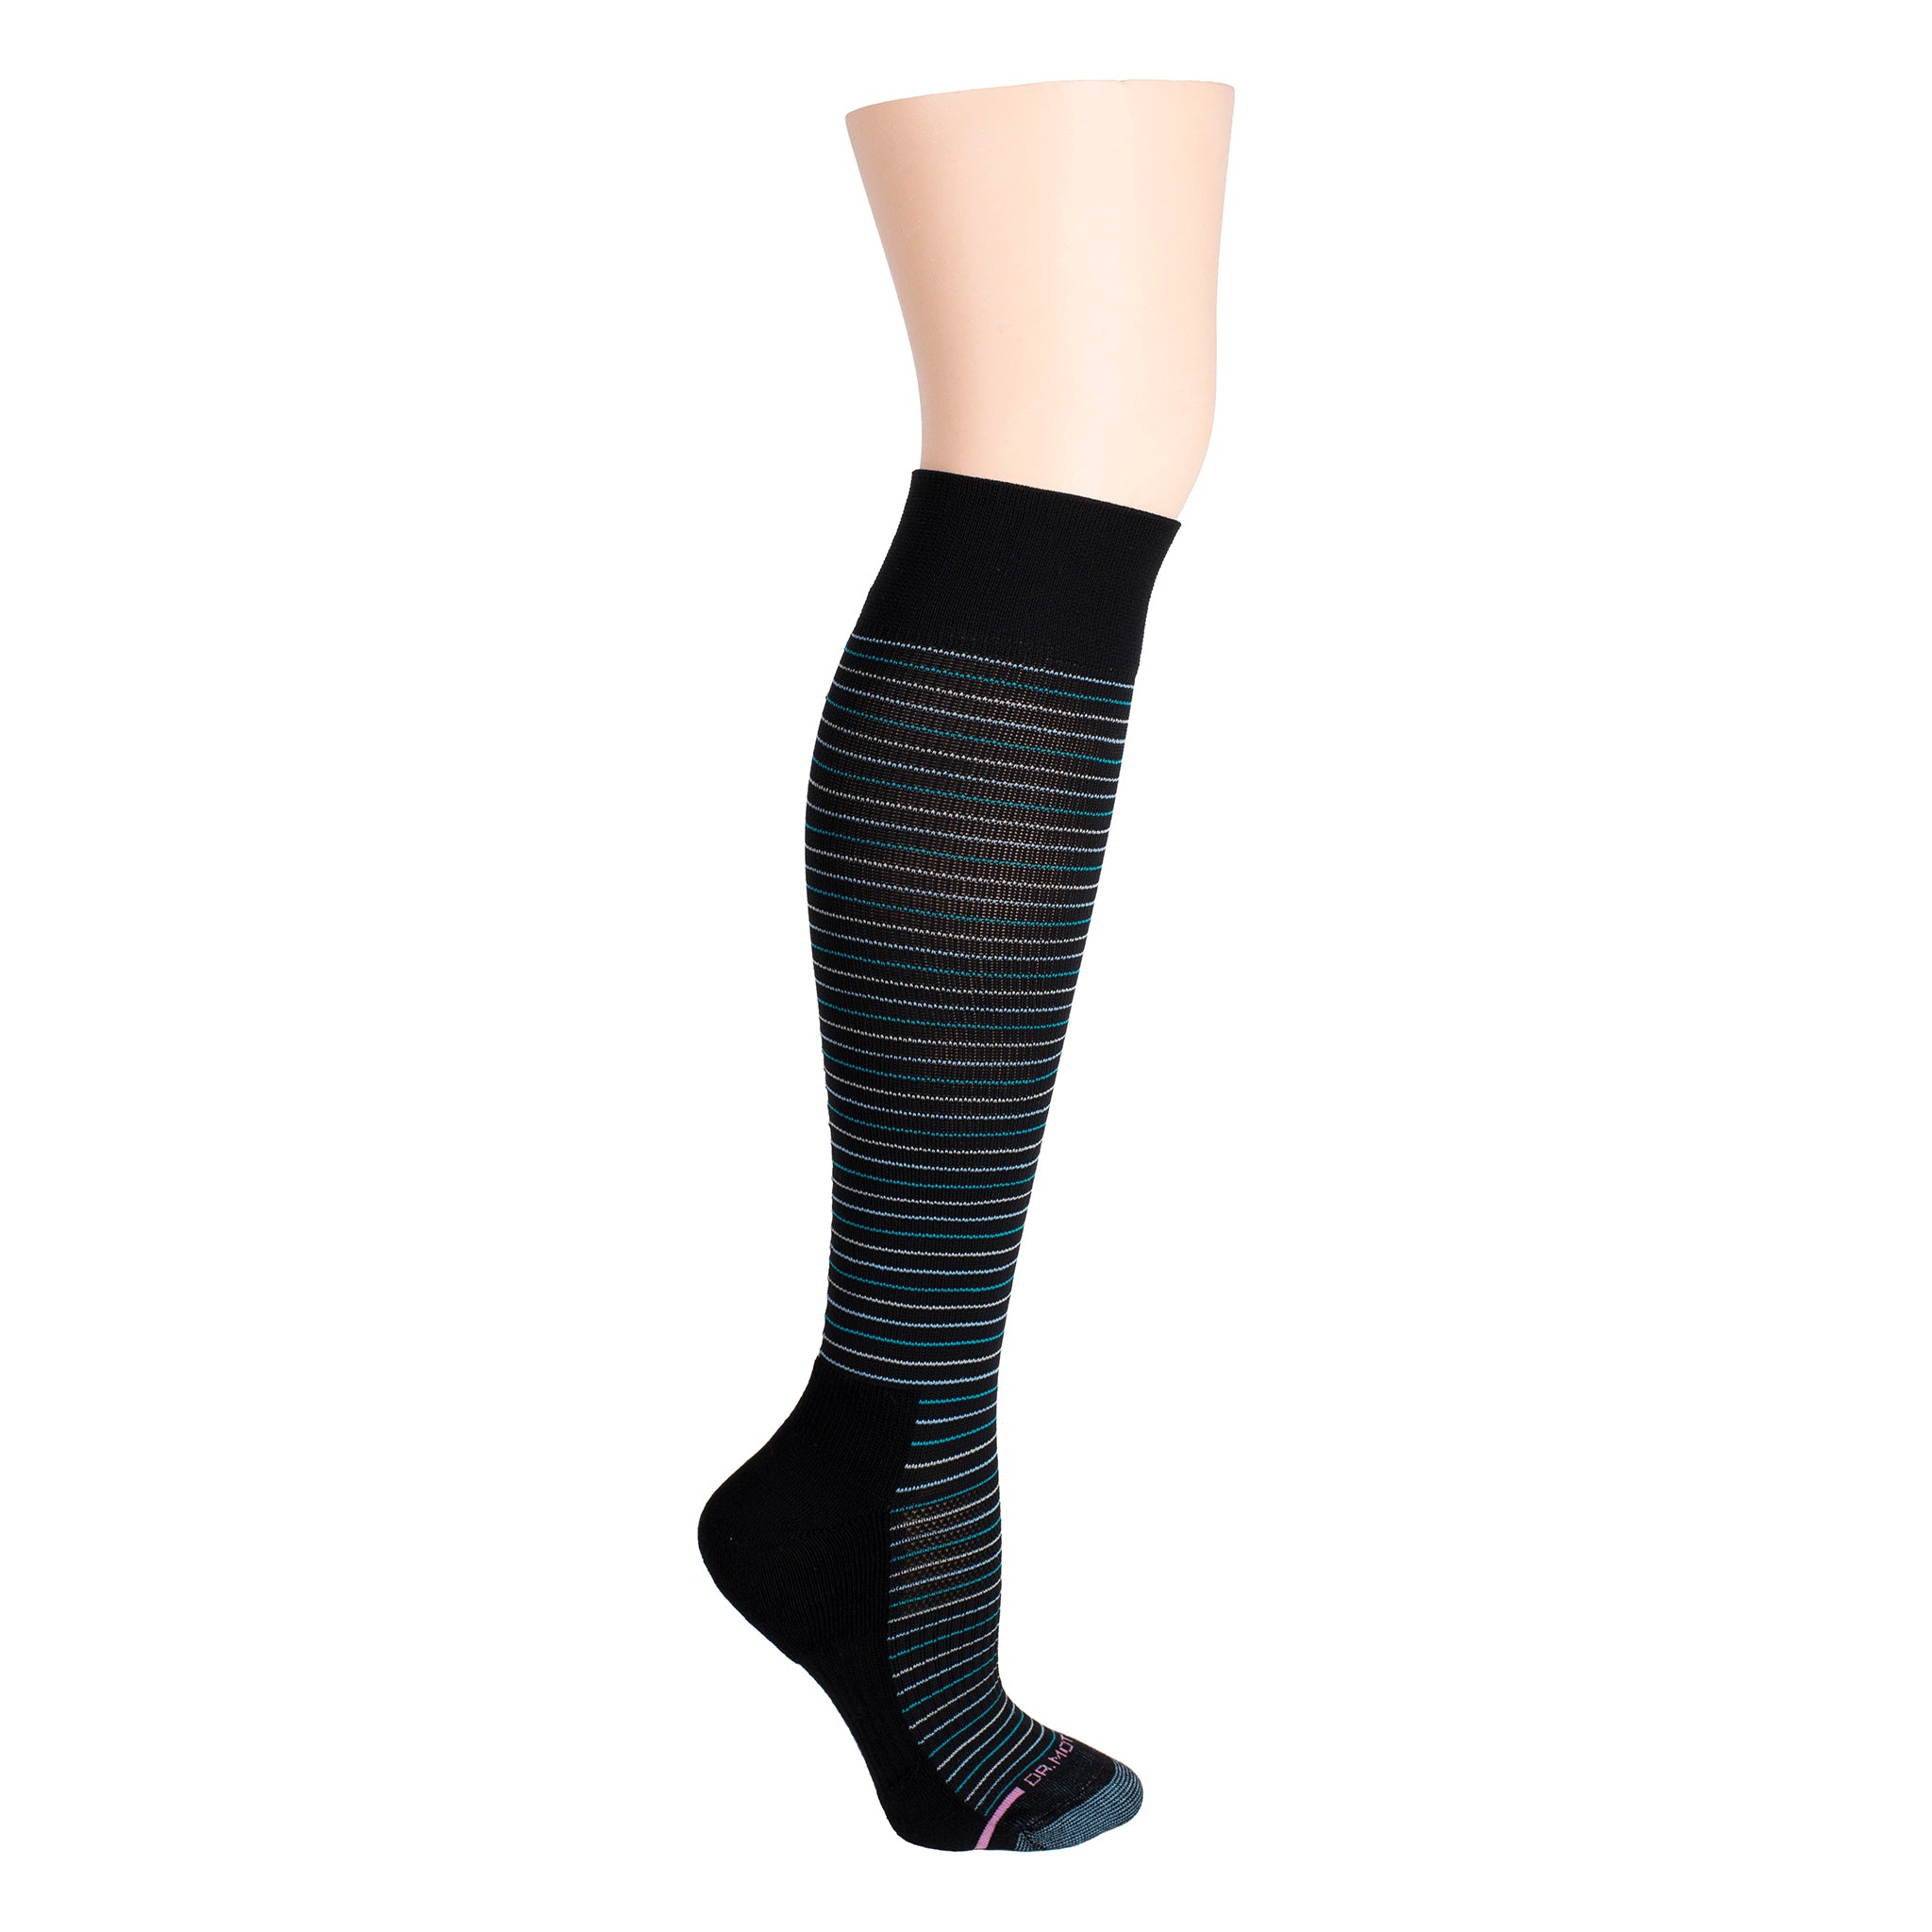 Black White Stripe Socks Premium Cotton Short Knee high Over The